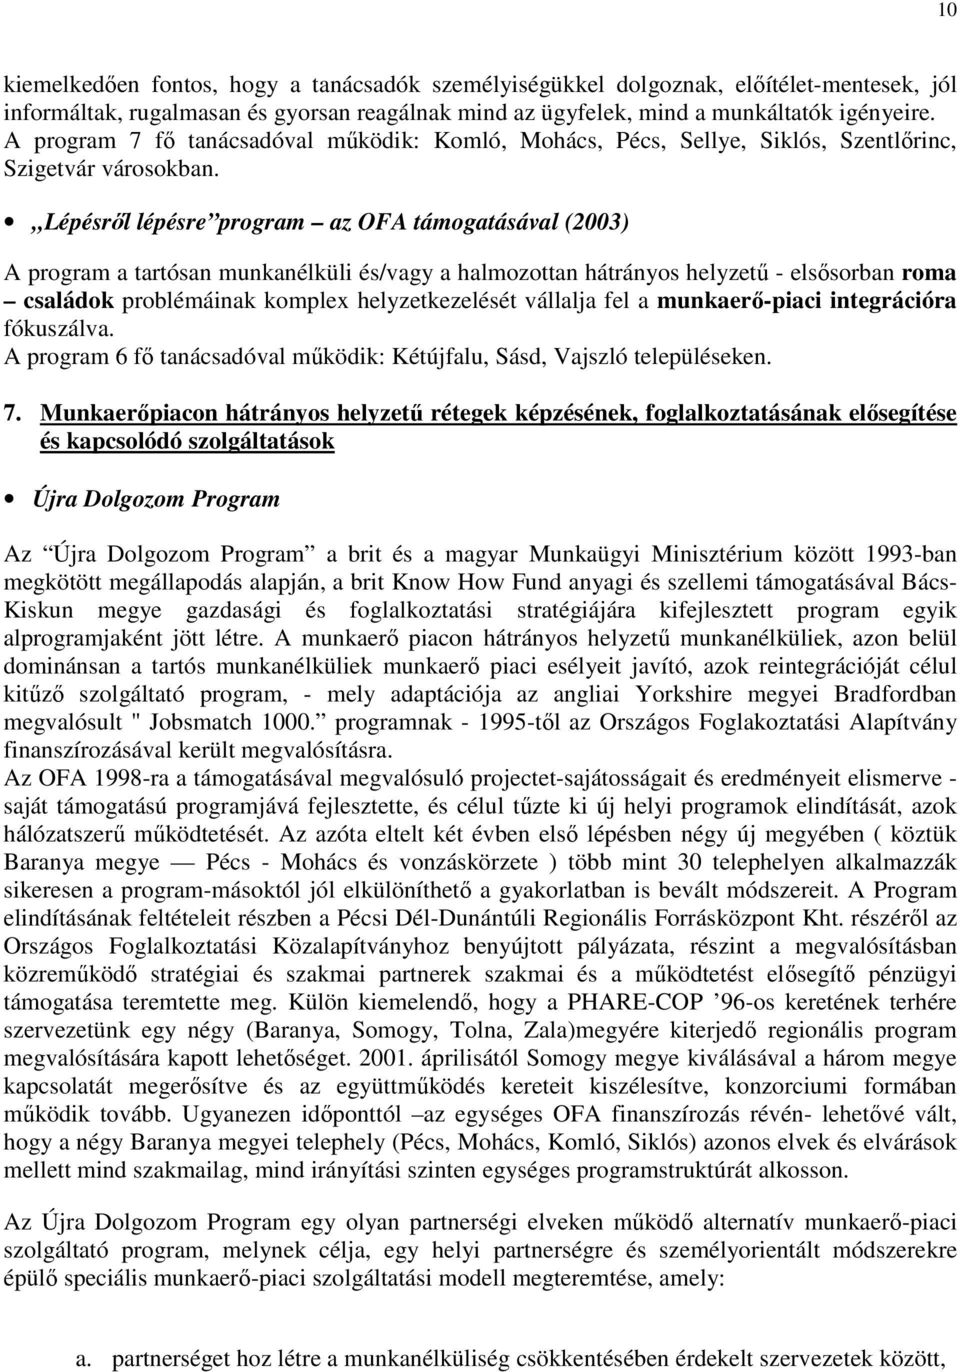 Lépésrıl lépésre program az OFA támogatásával (2003) A program a tartósan munkanélküli és/vagy a halmozottan hátrányos helyzető - elsısorban roma családok problémáinak komplex helyzetkezelését